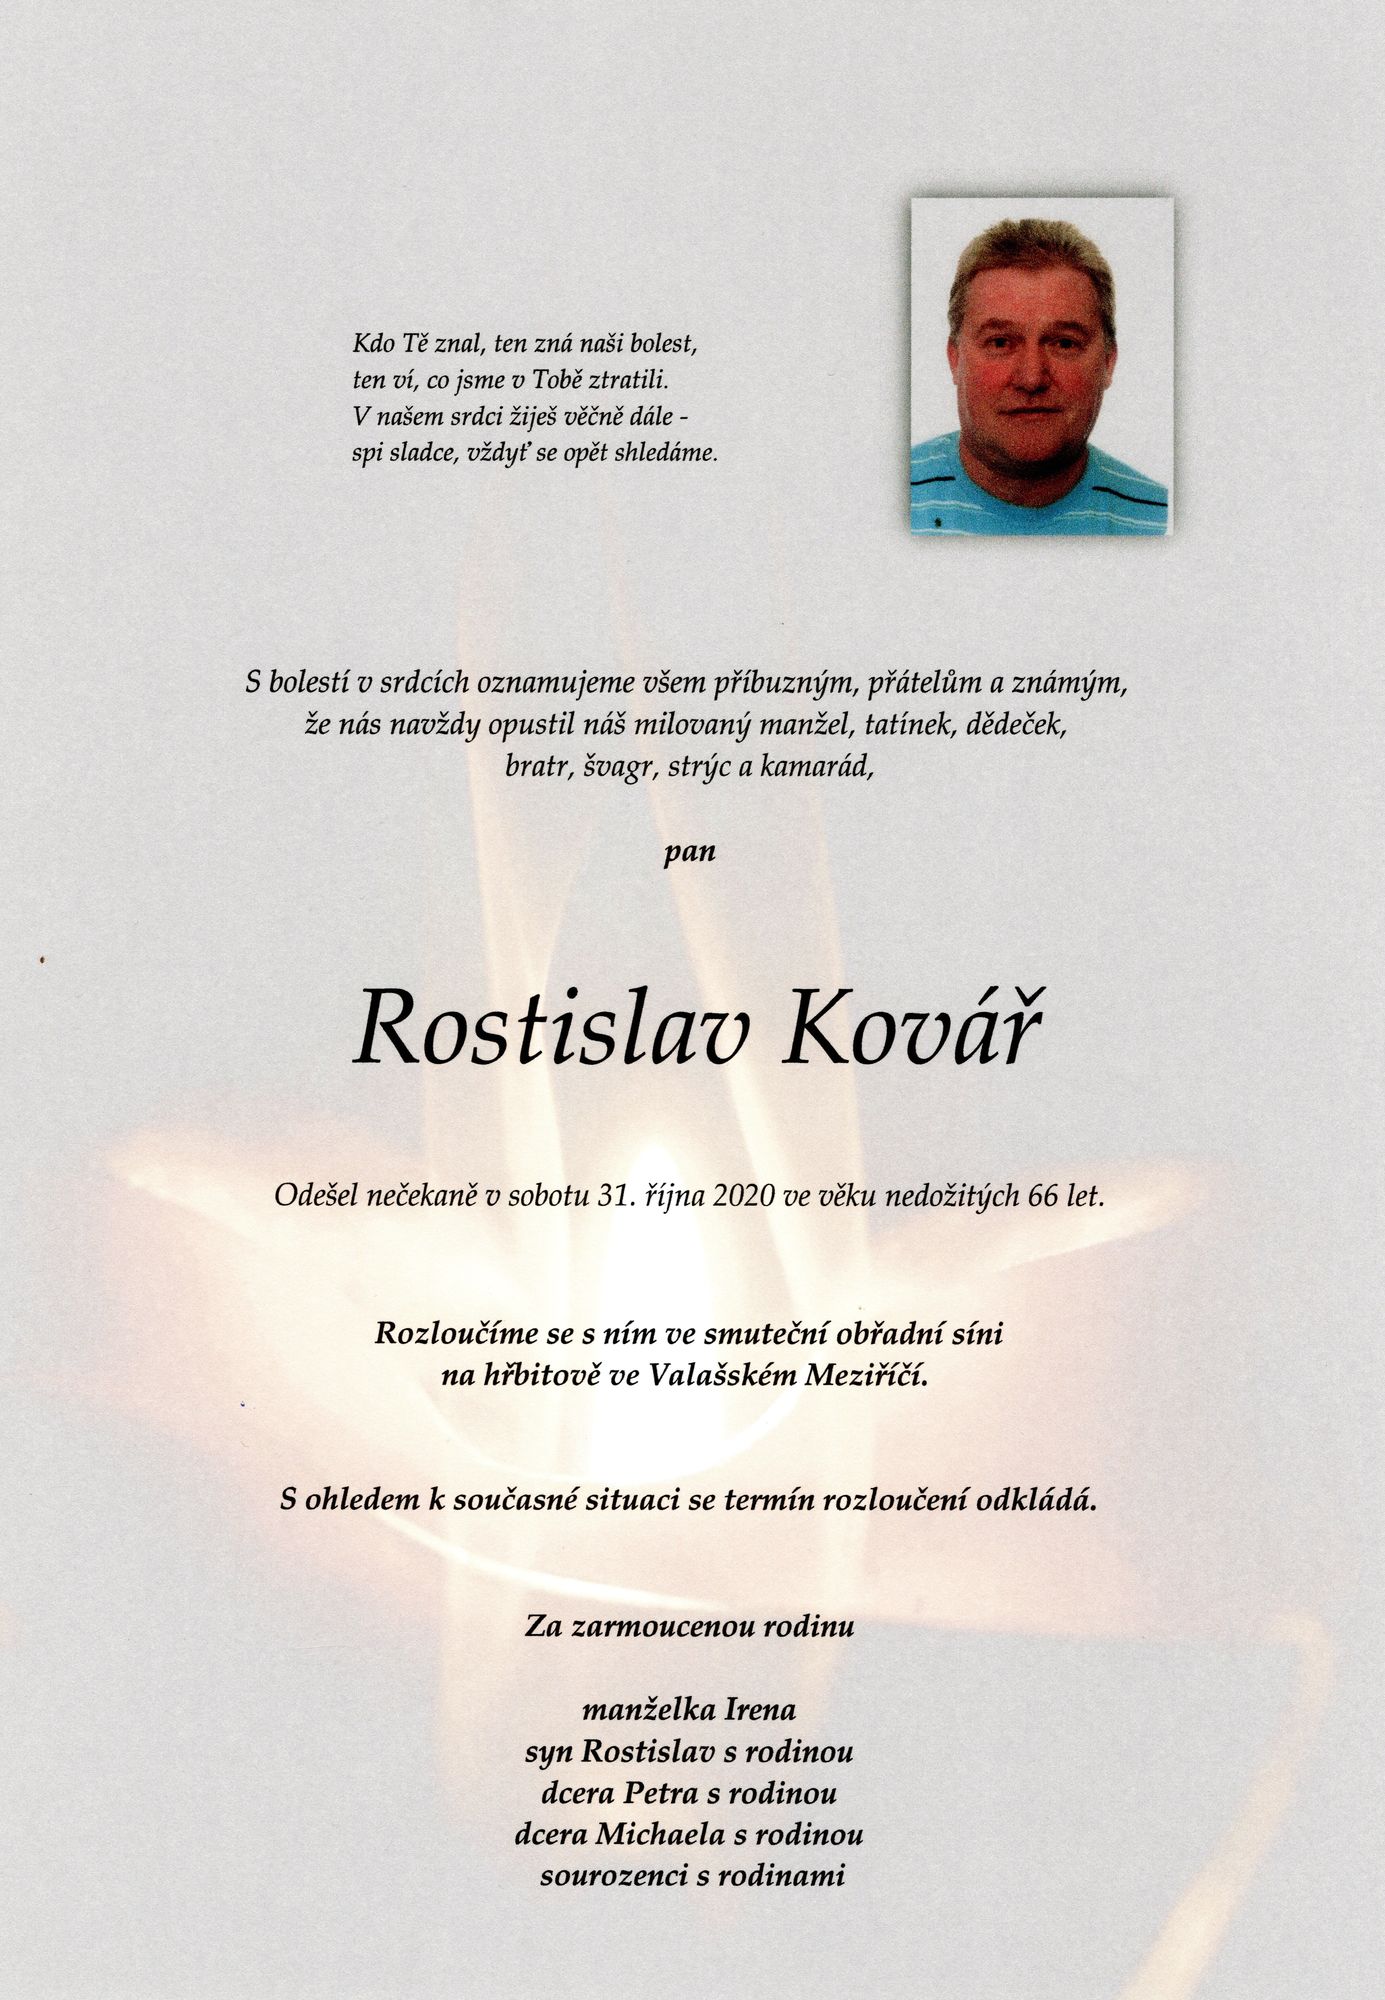 Rostislav Kovář